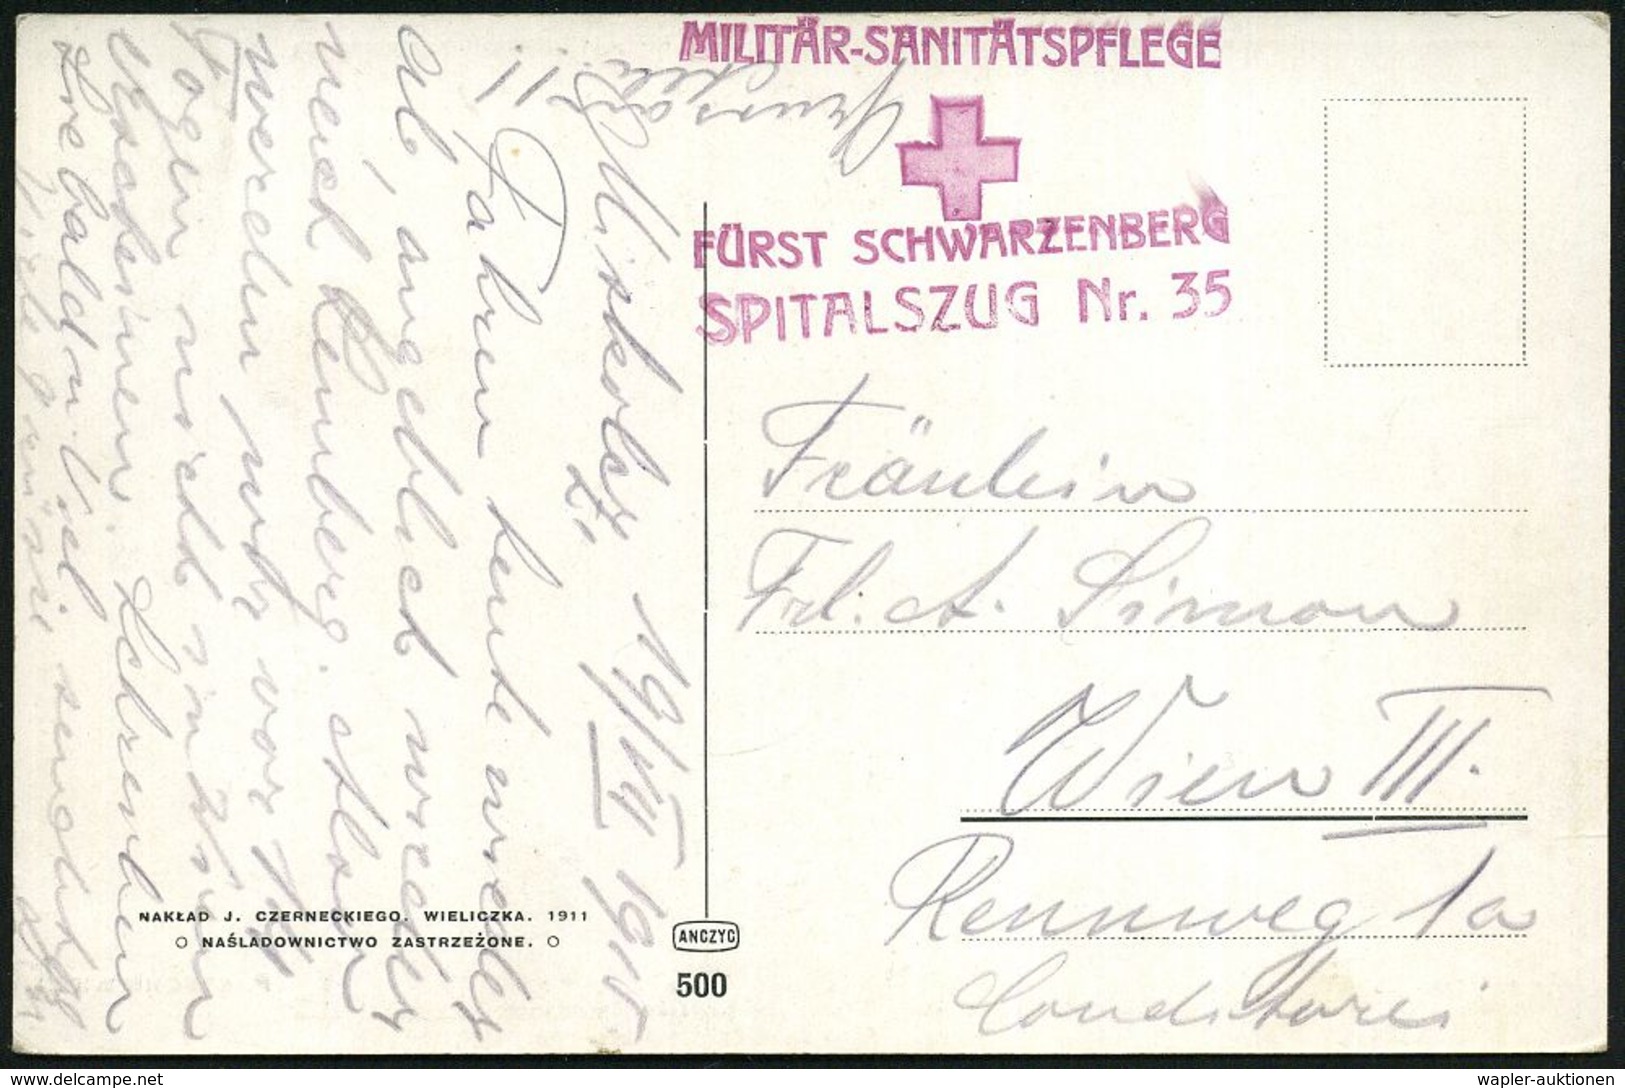 MILITÄR-MEDIZIN / SANITÄTSDIENSTE : ÖSTERREICH 1915 (19.7.) Viol. Rotkreuz-HdN: MILITÄR-SANITÄSPFLEGE/ FÜRST SCHWARZENBE - Médecine